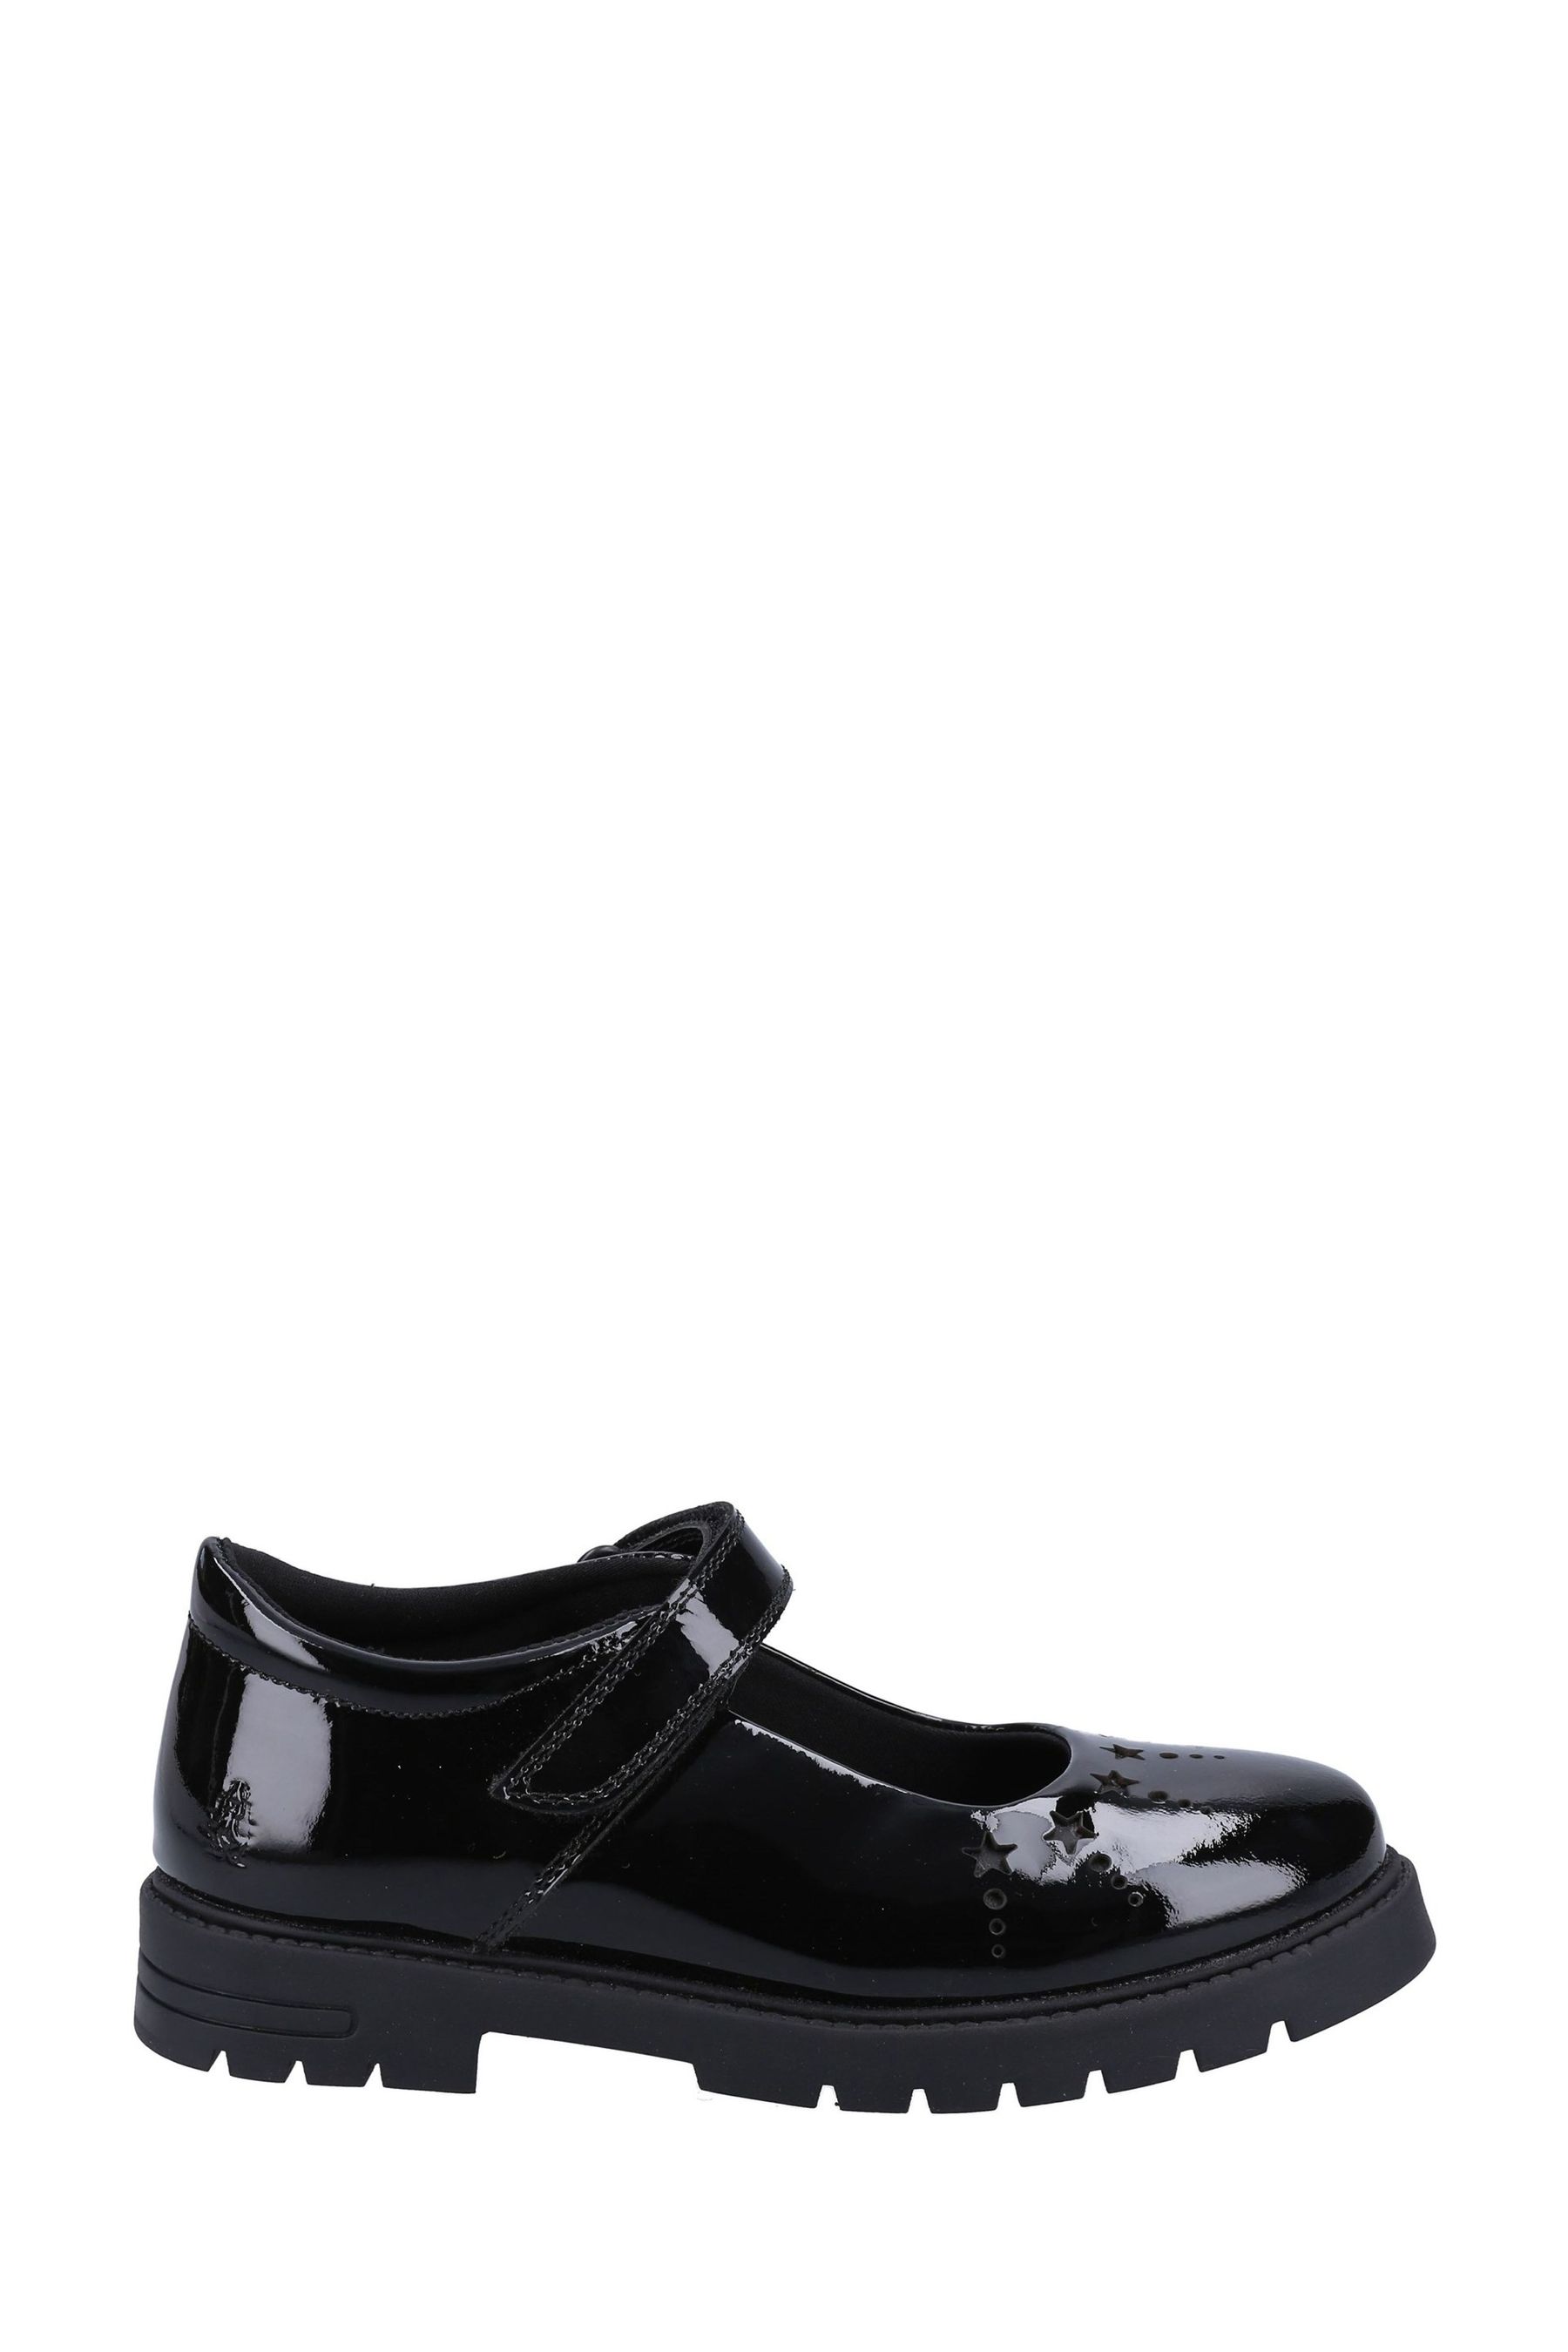 Черные лакированные туфли Sabrina Senior Hush Puppies, черный школьная обувь sabrina patent hush puppies черный